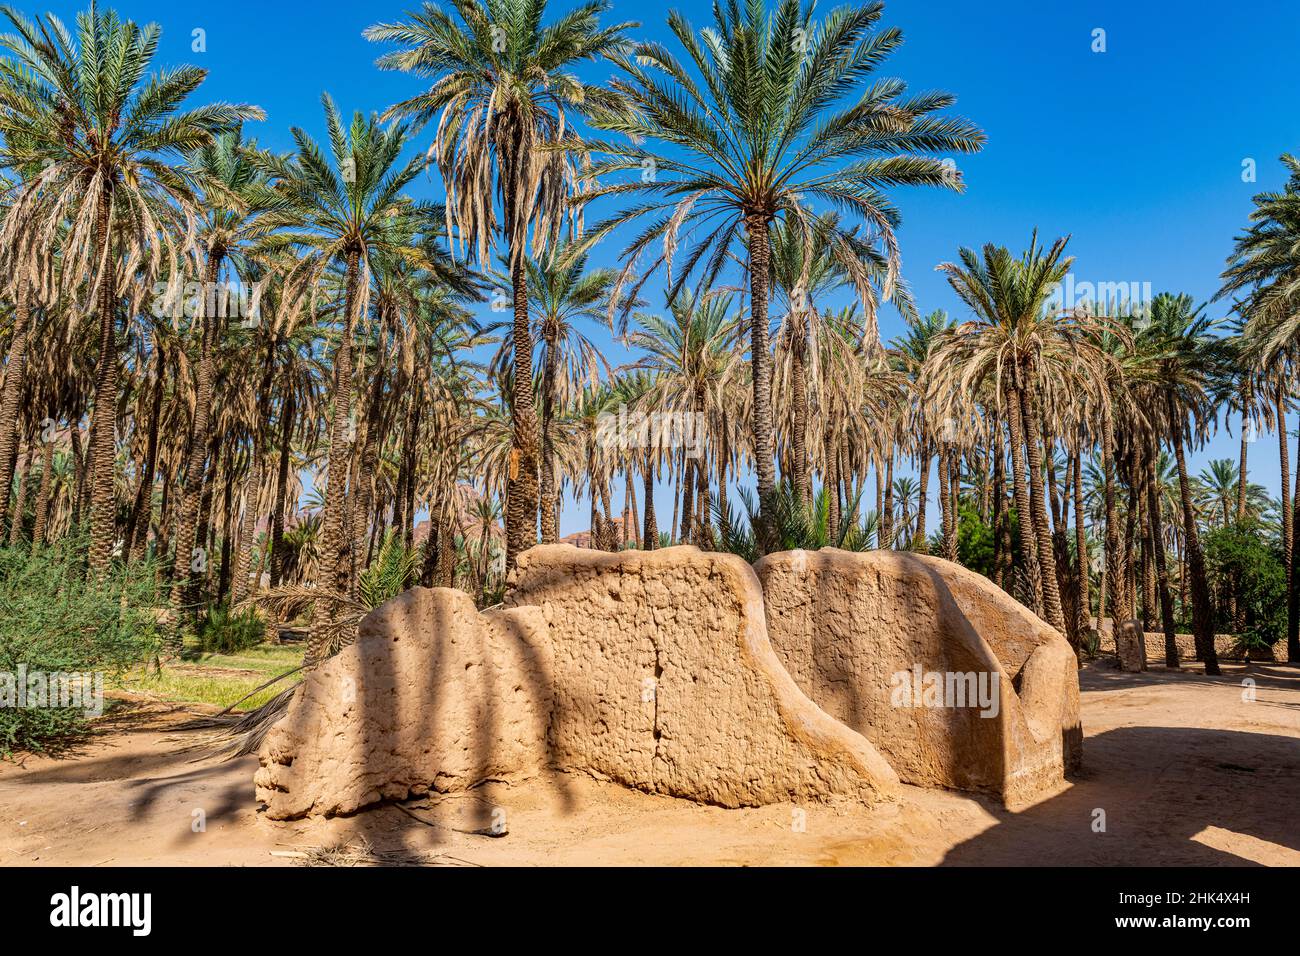 Oasis de Al Ula, Reino de Arabia Saudita, Oriente Medio Foto de stock